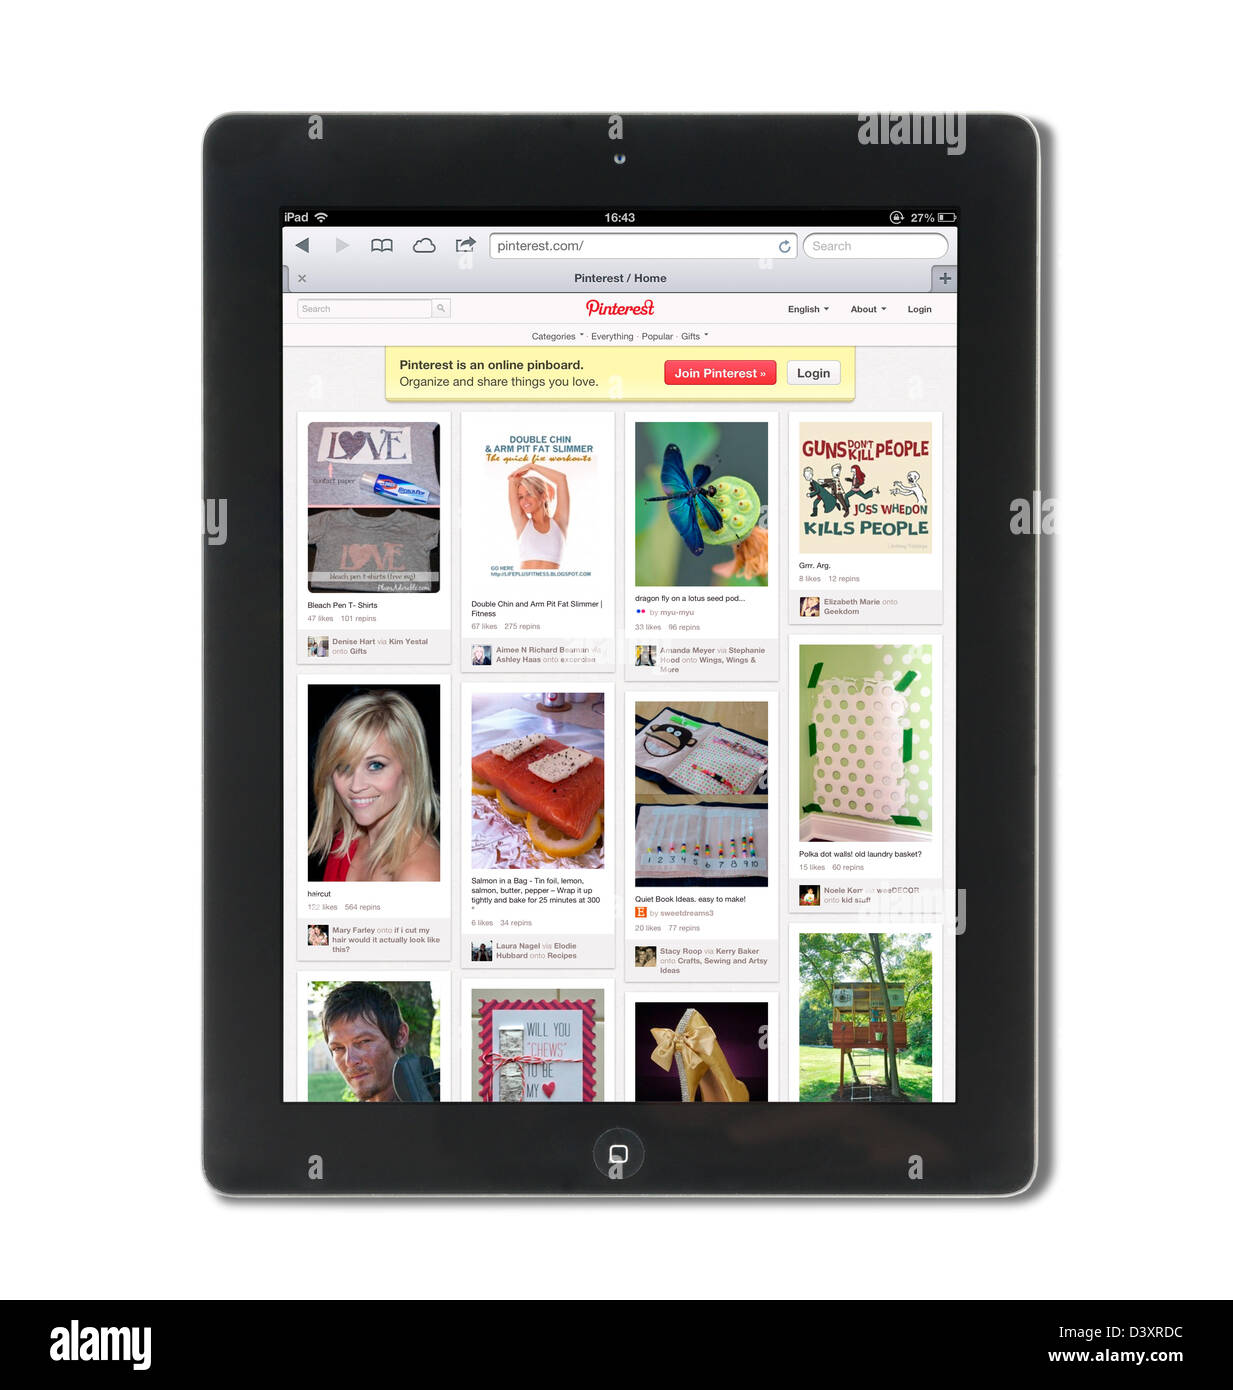 Pinterest, die Foto-sharing-Website, auf eine 4. Generation iPad angesehen Stockfoto